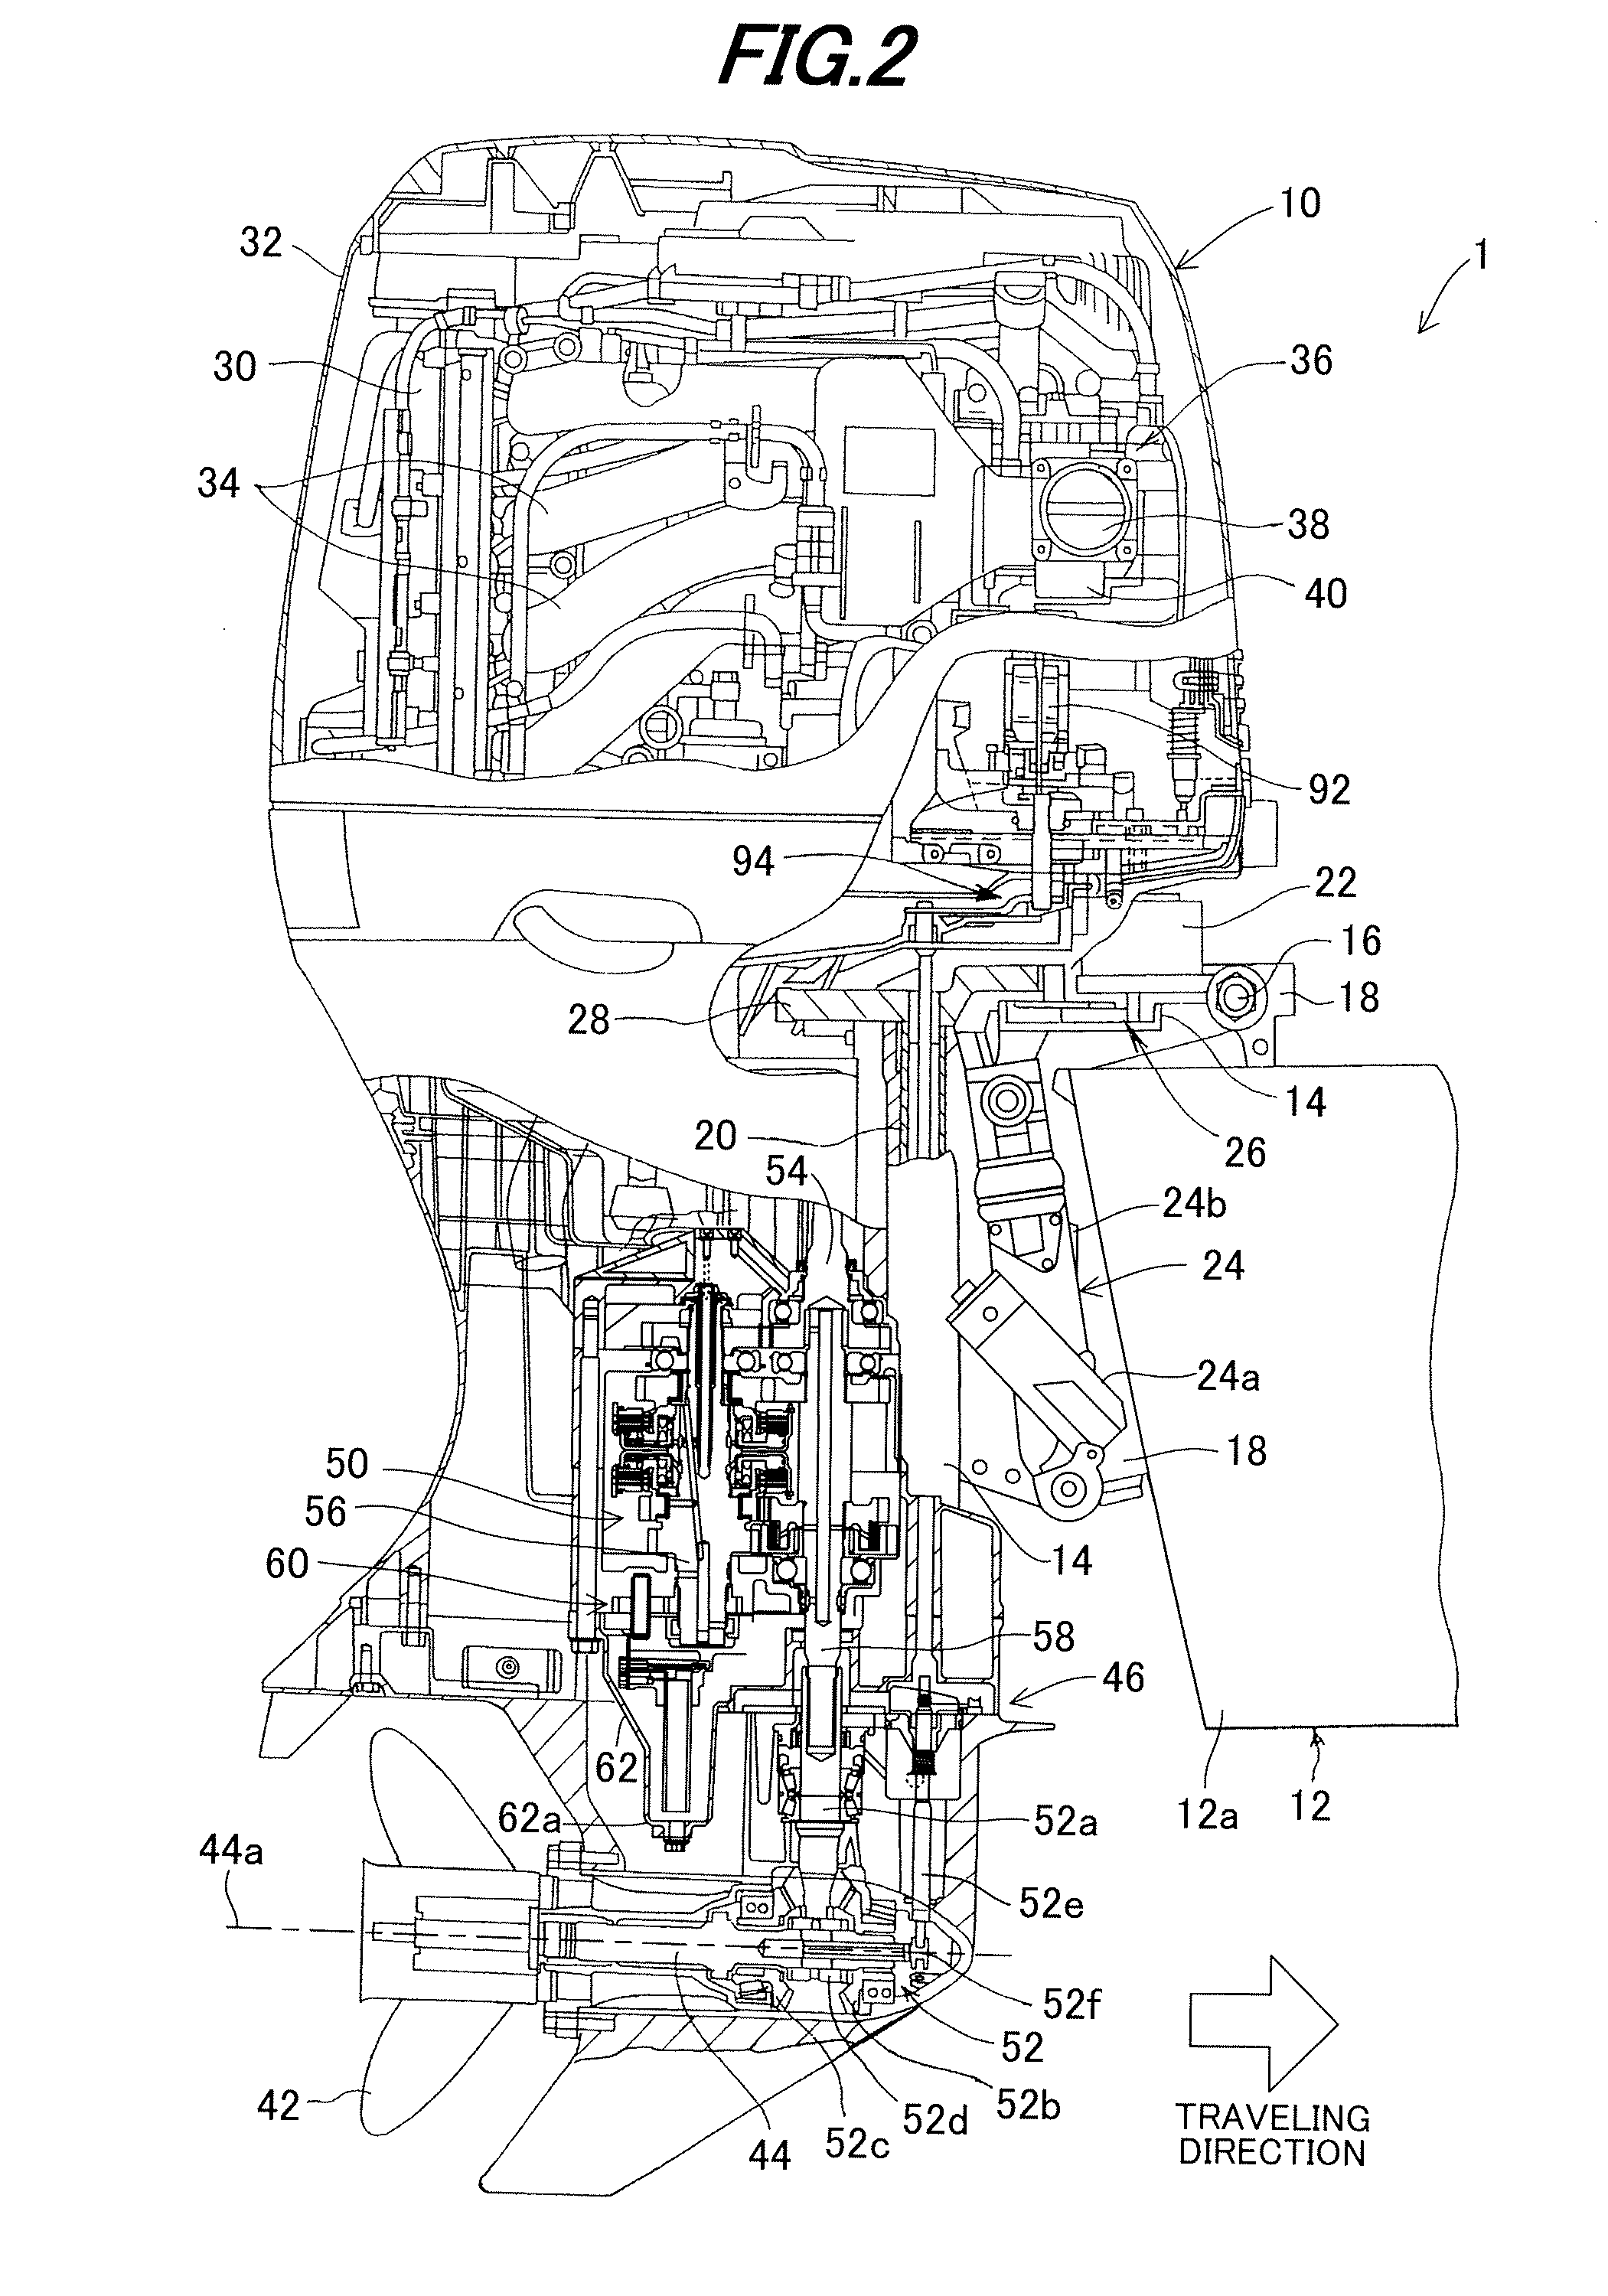 Outboard motor control apparatus